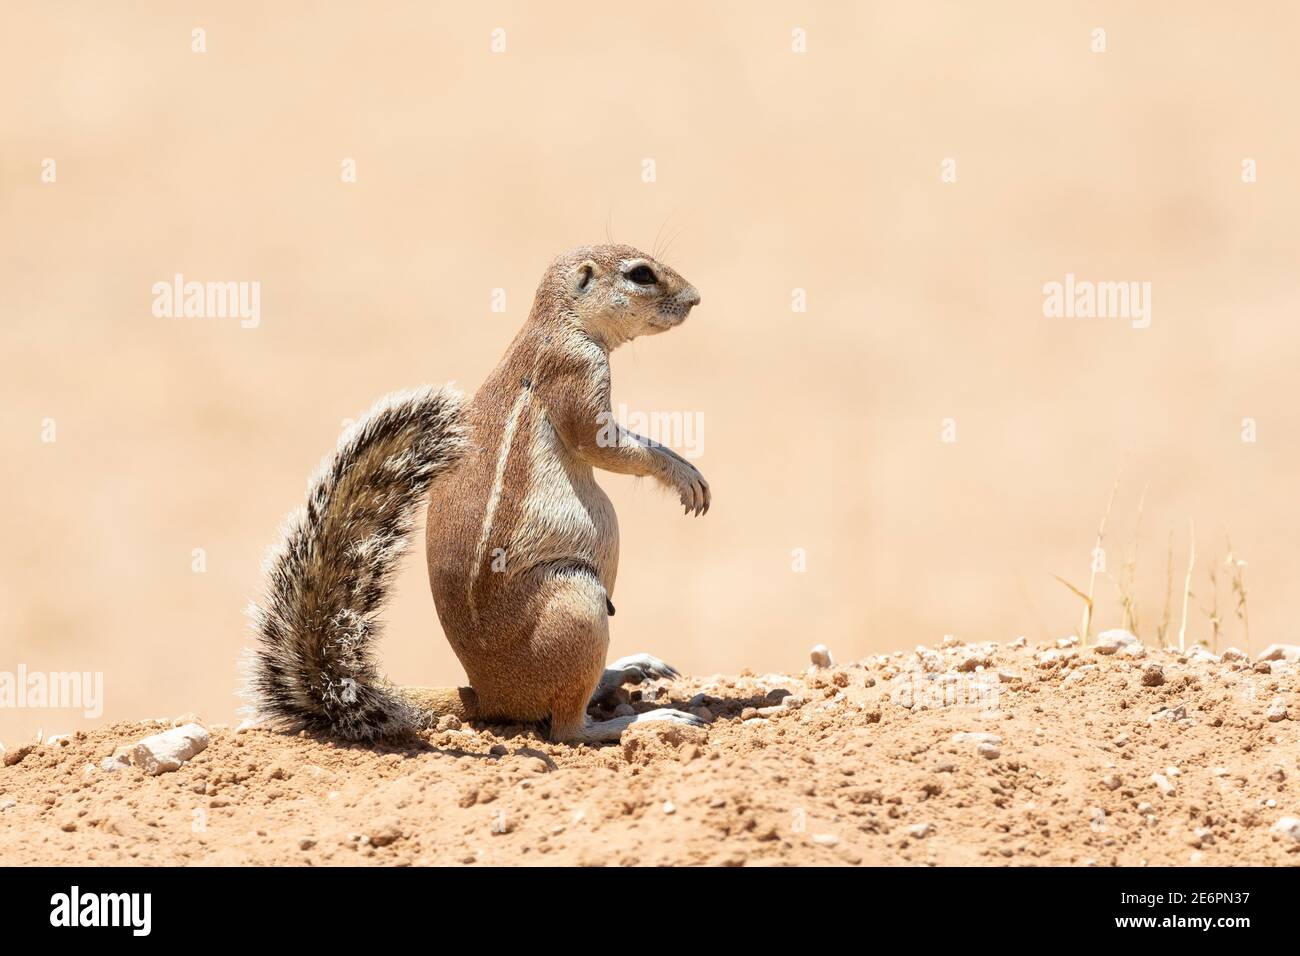 Cape / South African Ground Squirrel (Xerus inauris) femelle sur une dune de sable rouge Kgalagadi TransFrontier Park, Kalahari, Northern Cape, Afrique du Sud Banque D'Images